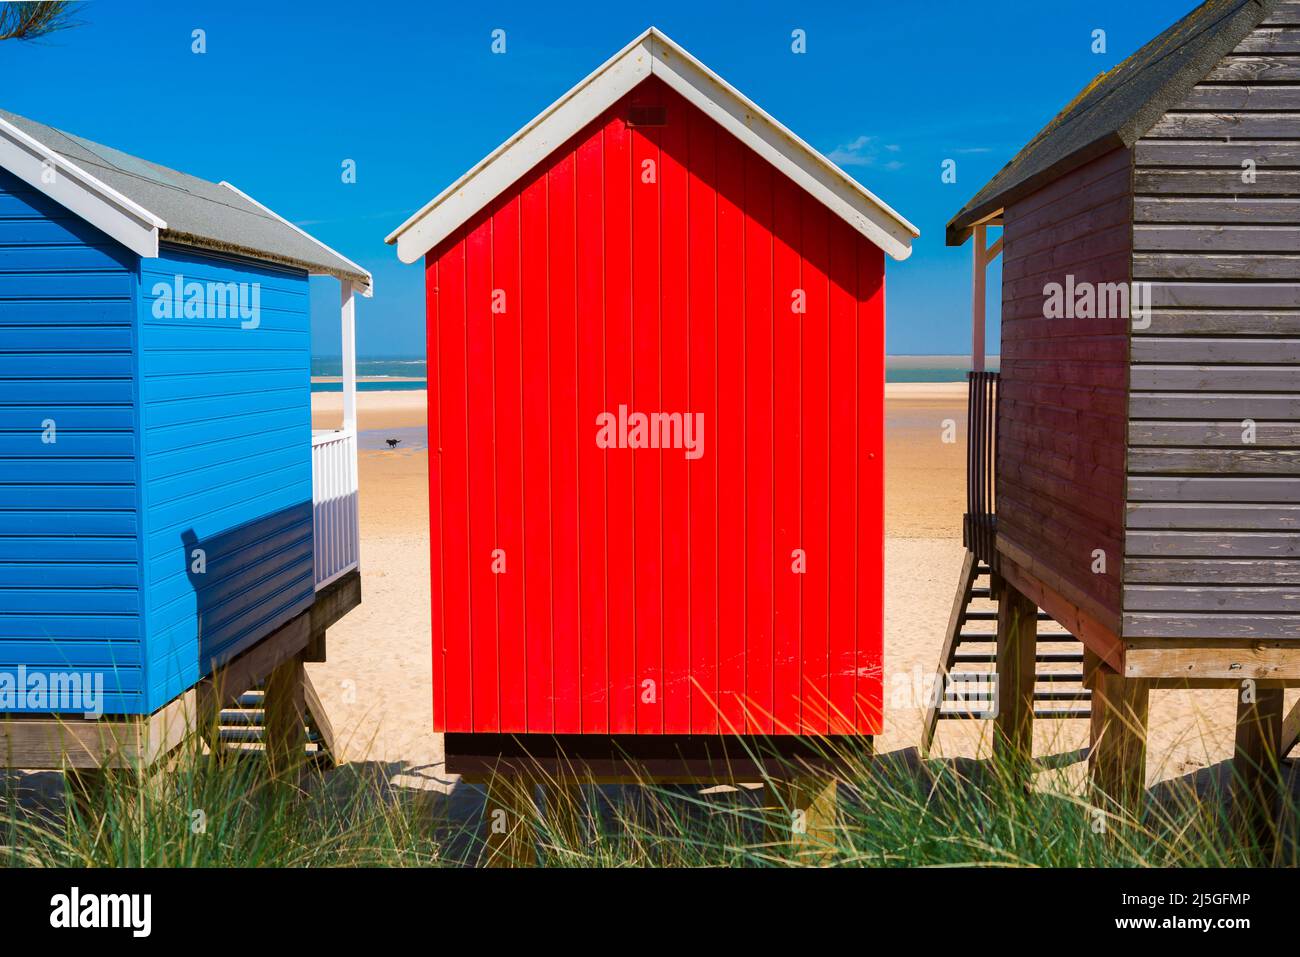 Hutte de plage colorée, vue en été de huttes de plage colorées faisant face à la plage de sable à Wells-Next-the-Sea sur la côte nord de Norfolk, Angleterre, Royaume-Uni Banque D'Images